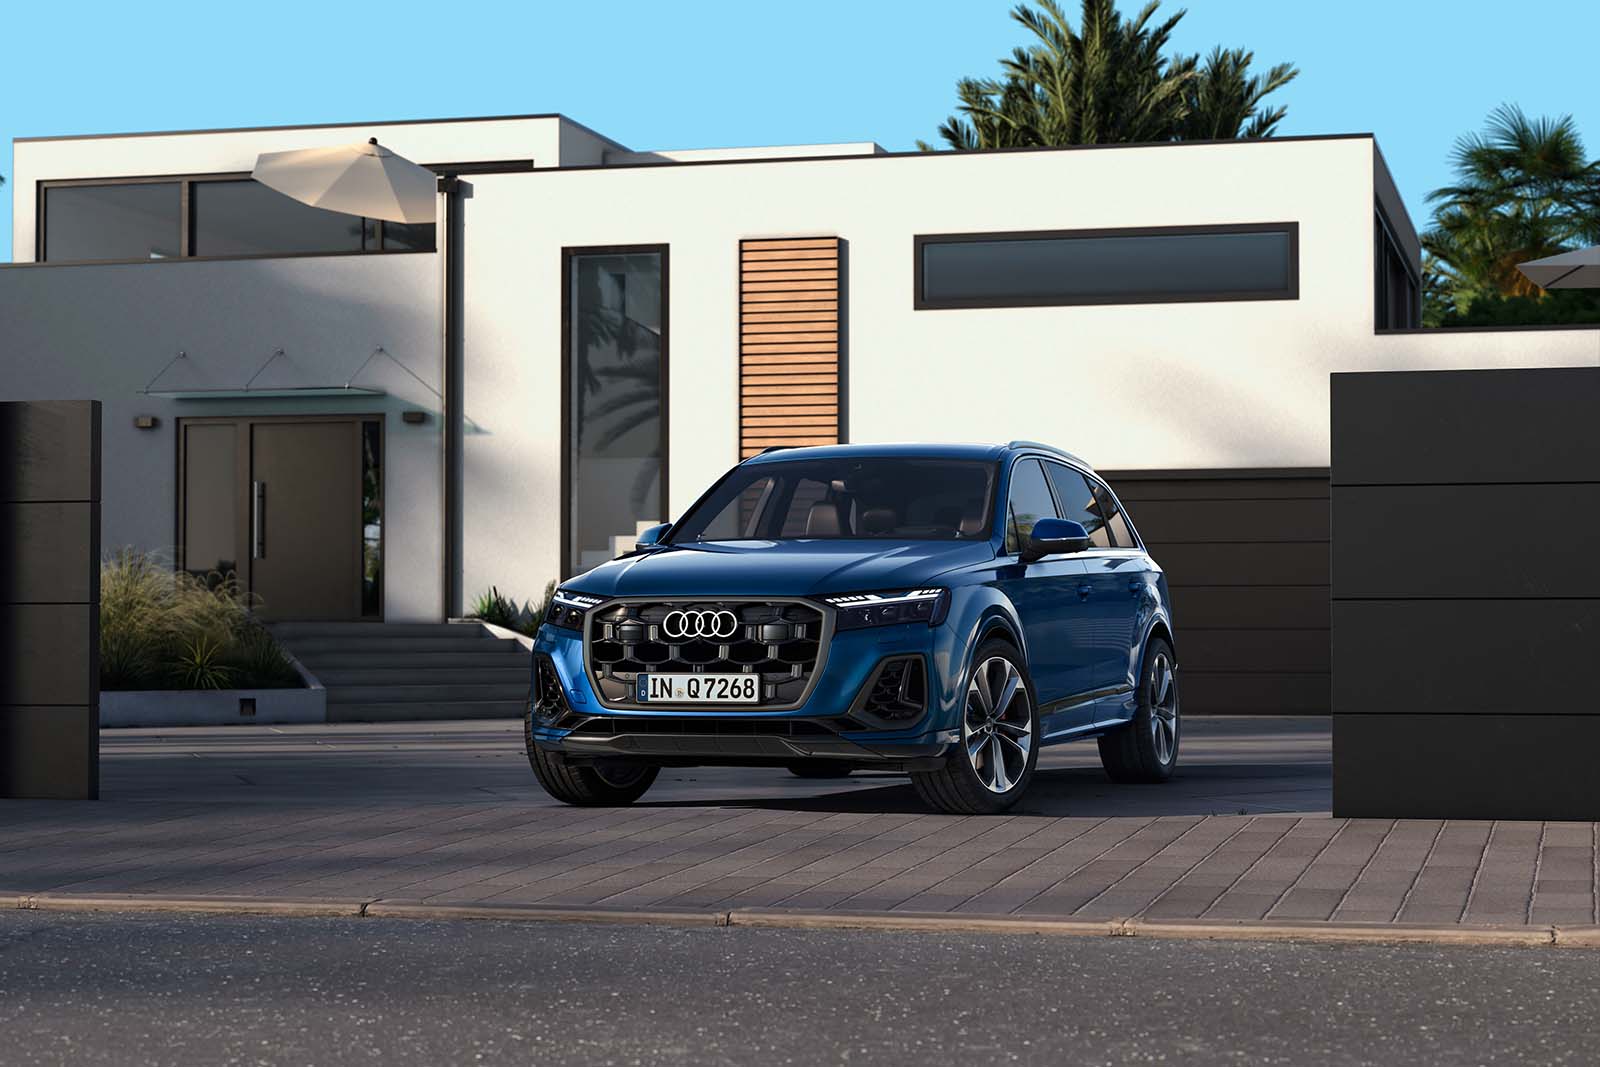 Audi Q7 sắp ra mắt tại thị trường Việt Nam có gì ấn tượng?